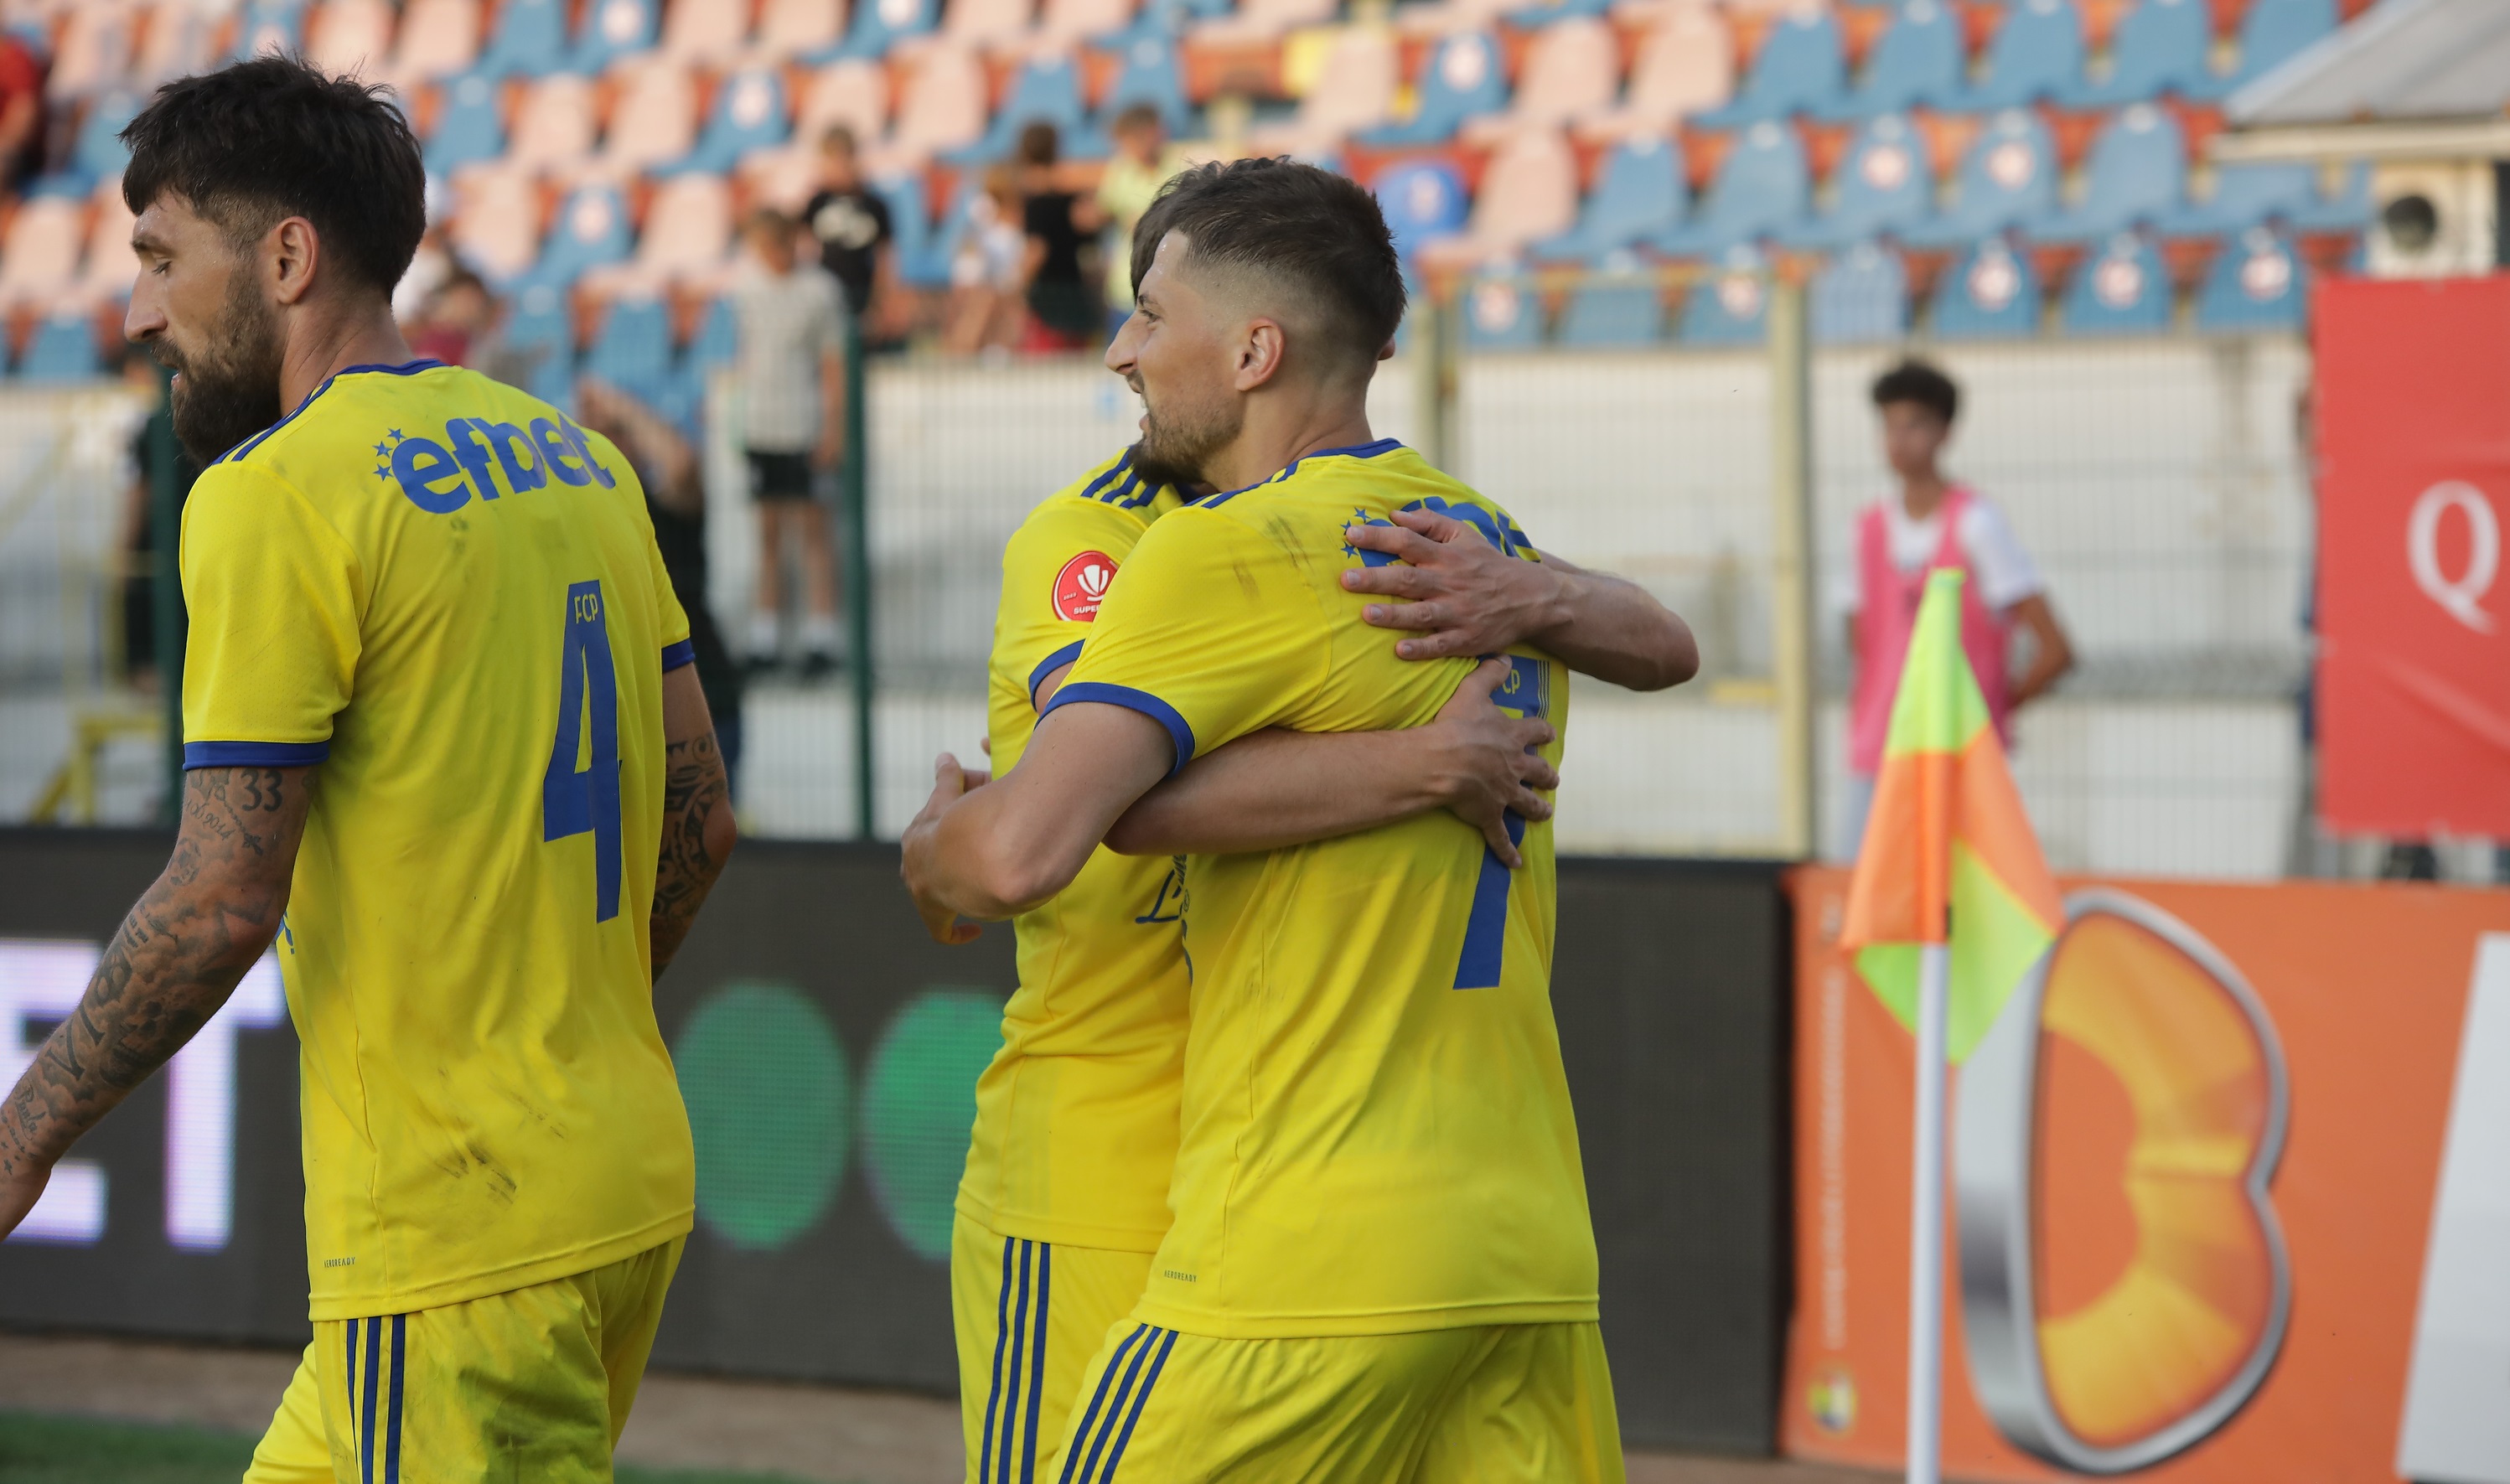 Petrolul - FC Voluntari, LIVE VIDEO, de la 18:30, pe DGS 1. ”Lupii” caută prima victorie din acest sezon